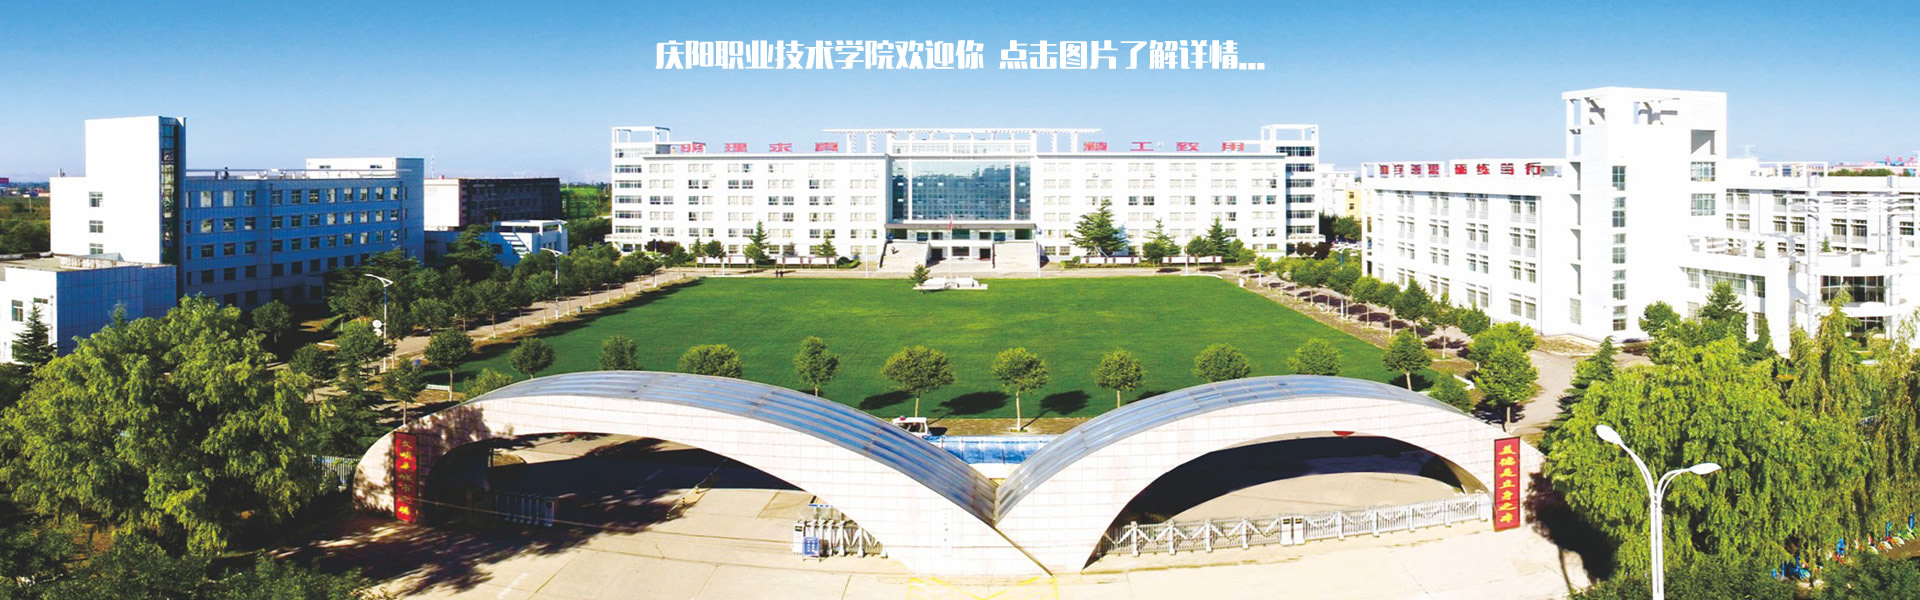 庆阳职业技术学院